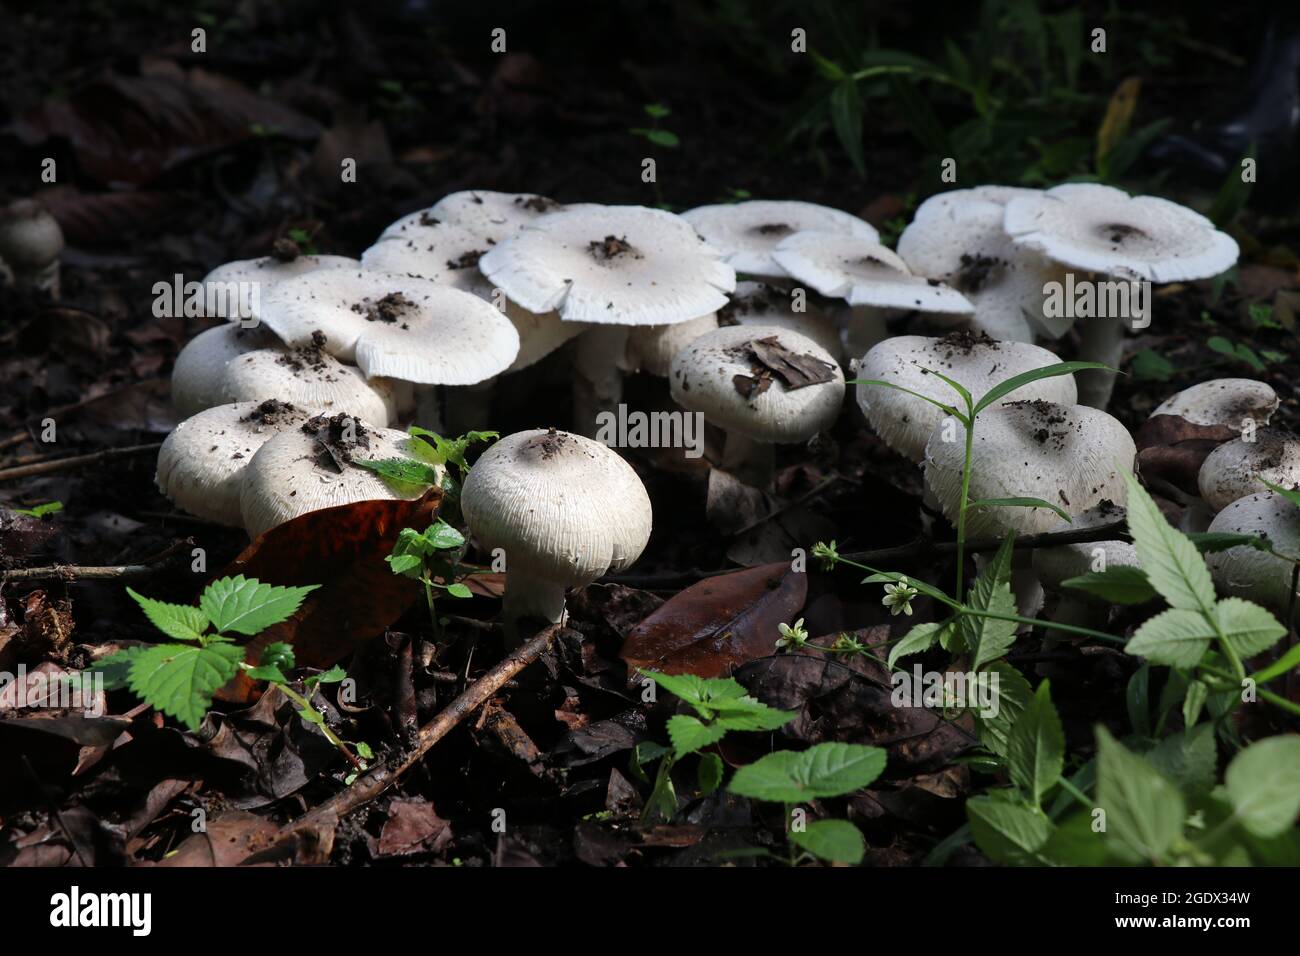 Gruppo di funghi trovati sulle montagne dell'india durante la stagione del monsone. Macrofotografia a fungo bianco commestibile Foto Stock